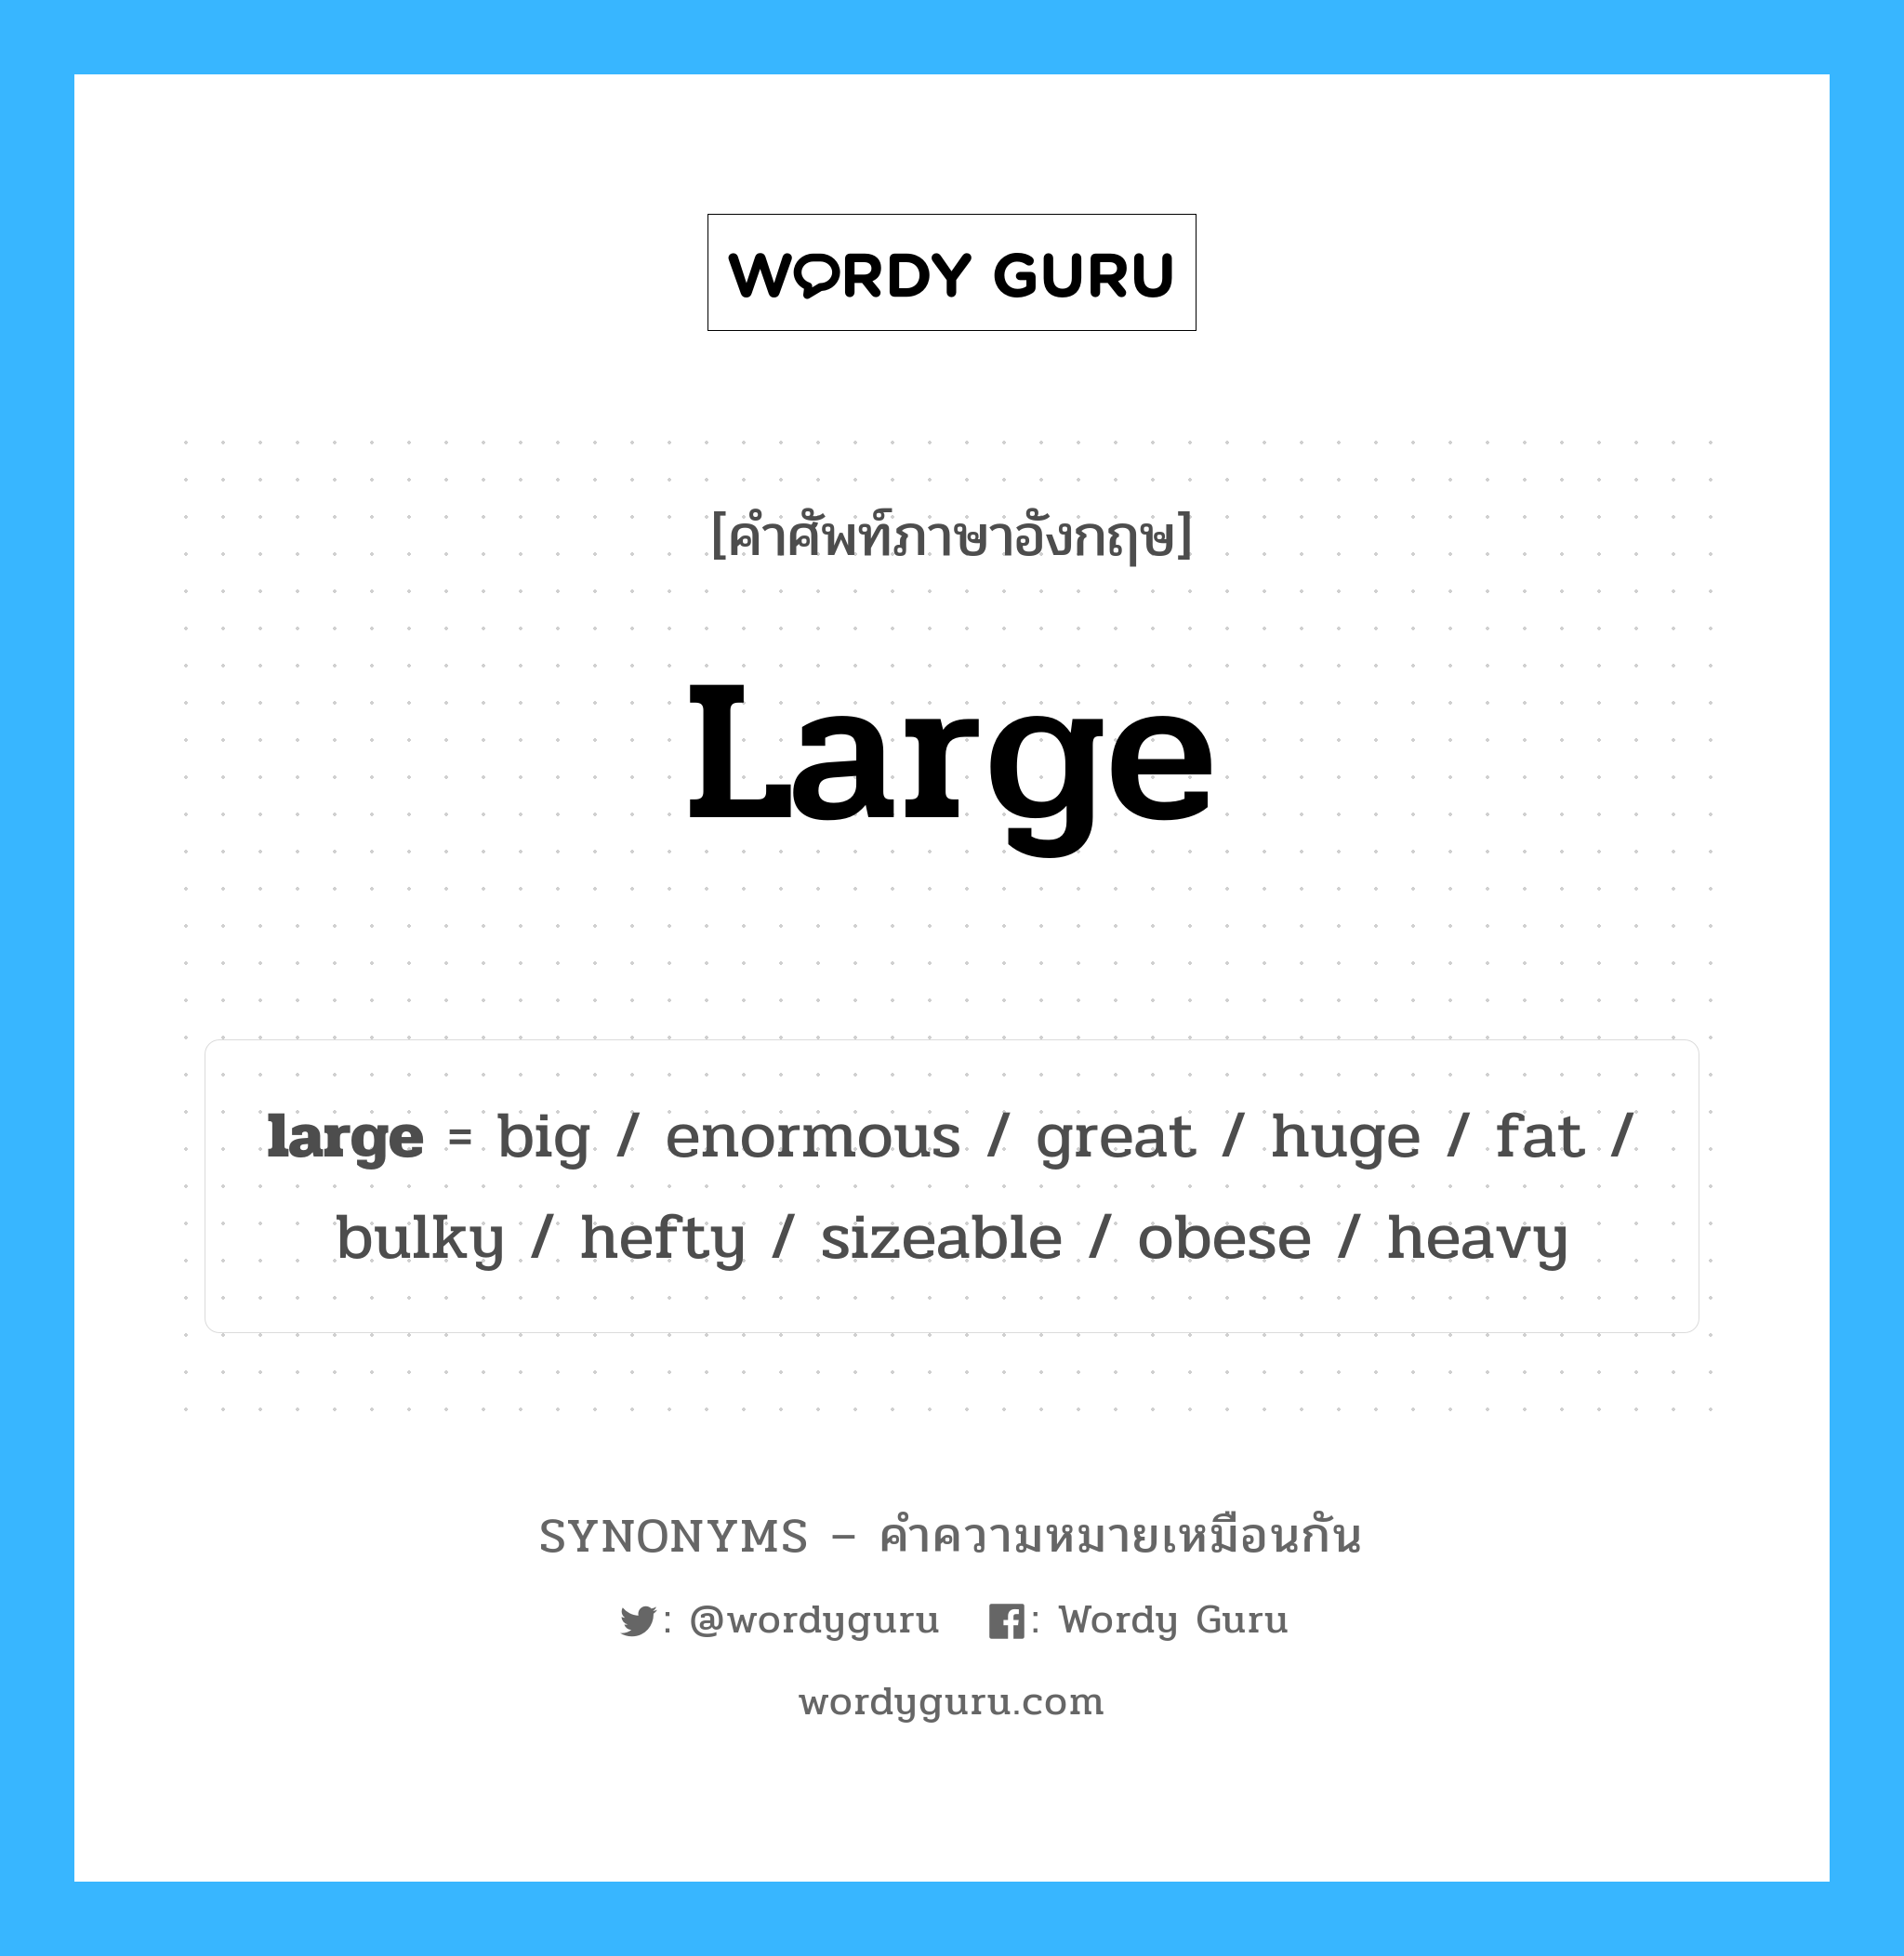 large เป็นหนึ่งใน big และมีคำอื่น ๆ อีกดังนี้, คำศัพท์ภาษาอังกฤษ large ความหมายคล้ายกันกับ big แปลว่า ใหญ่ หมวด big